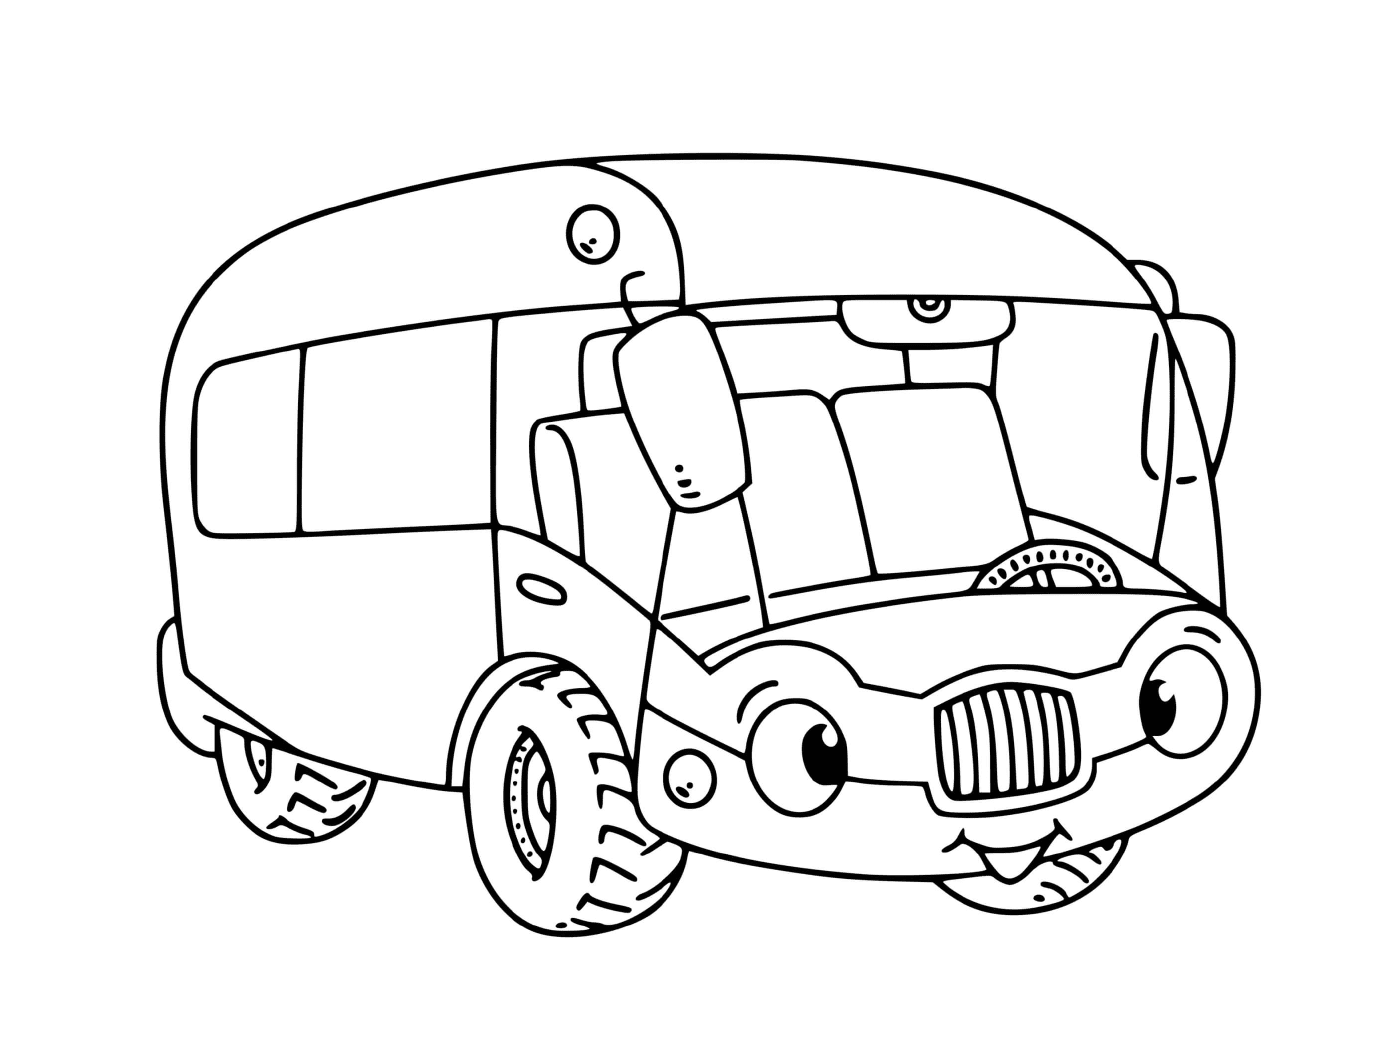  送儿童上学的交通:公共汽车 